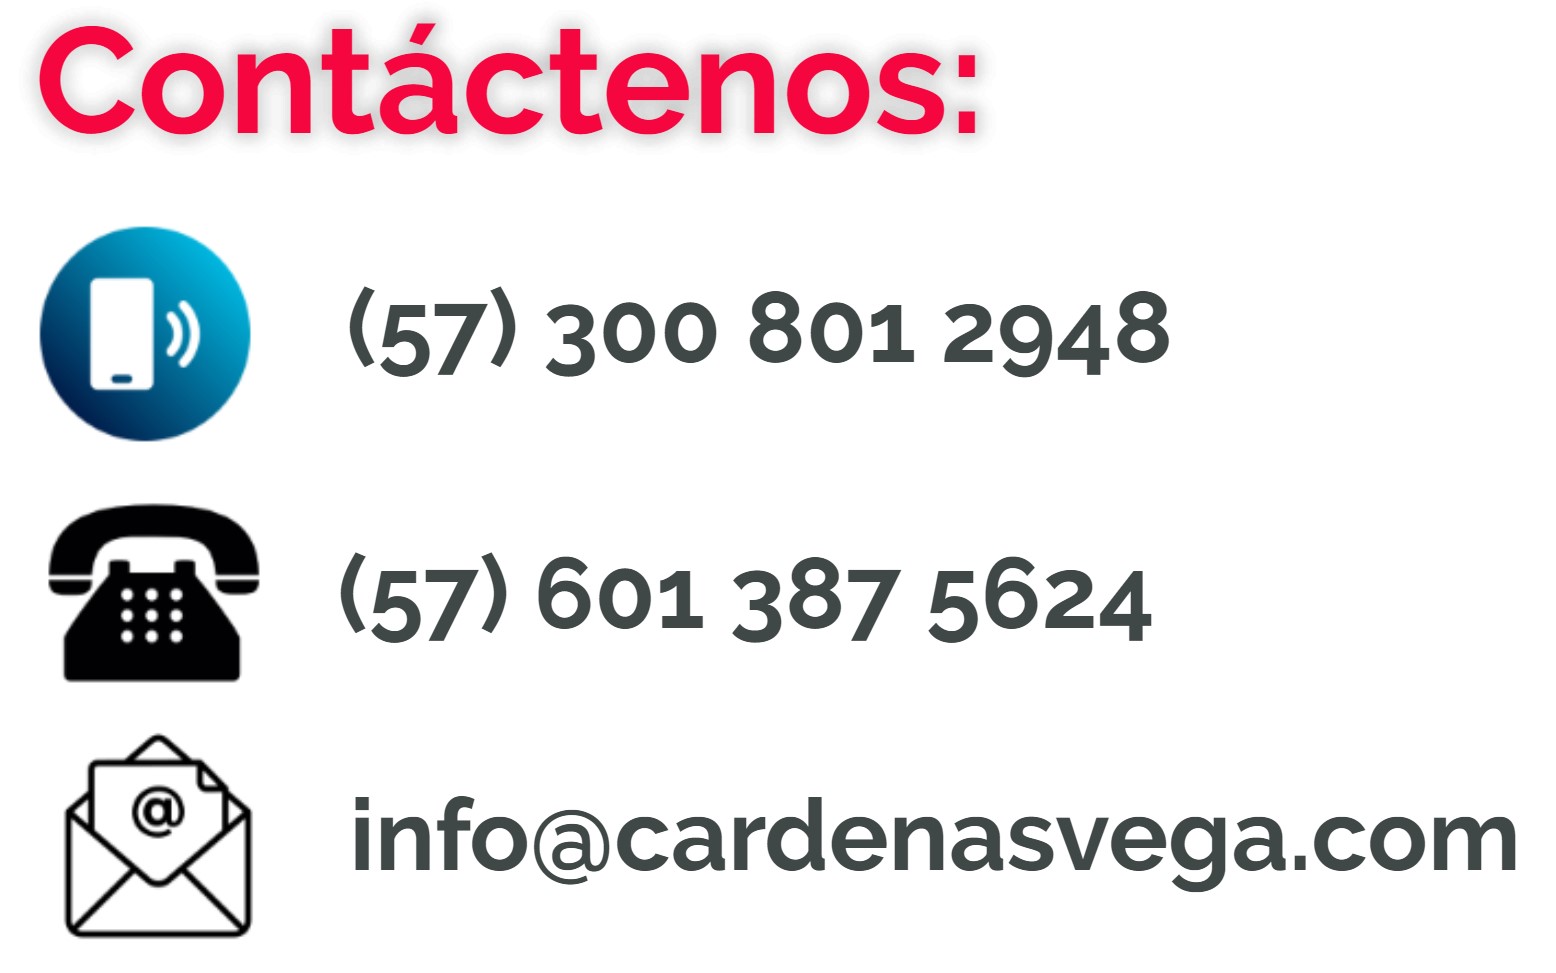 Teléfonos Cárdenas Vega Asesores